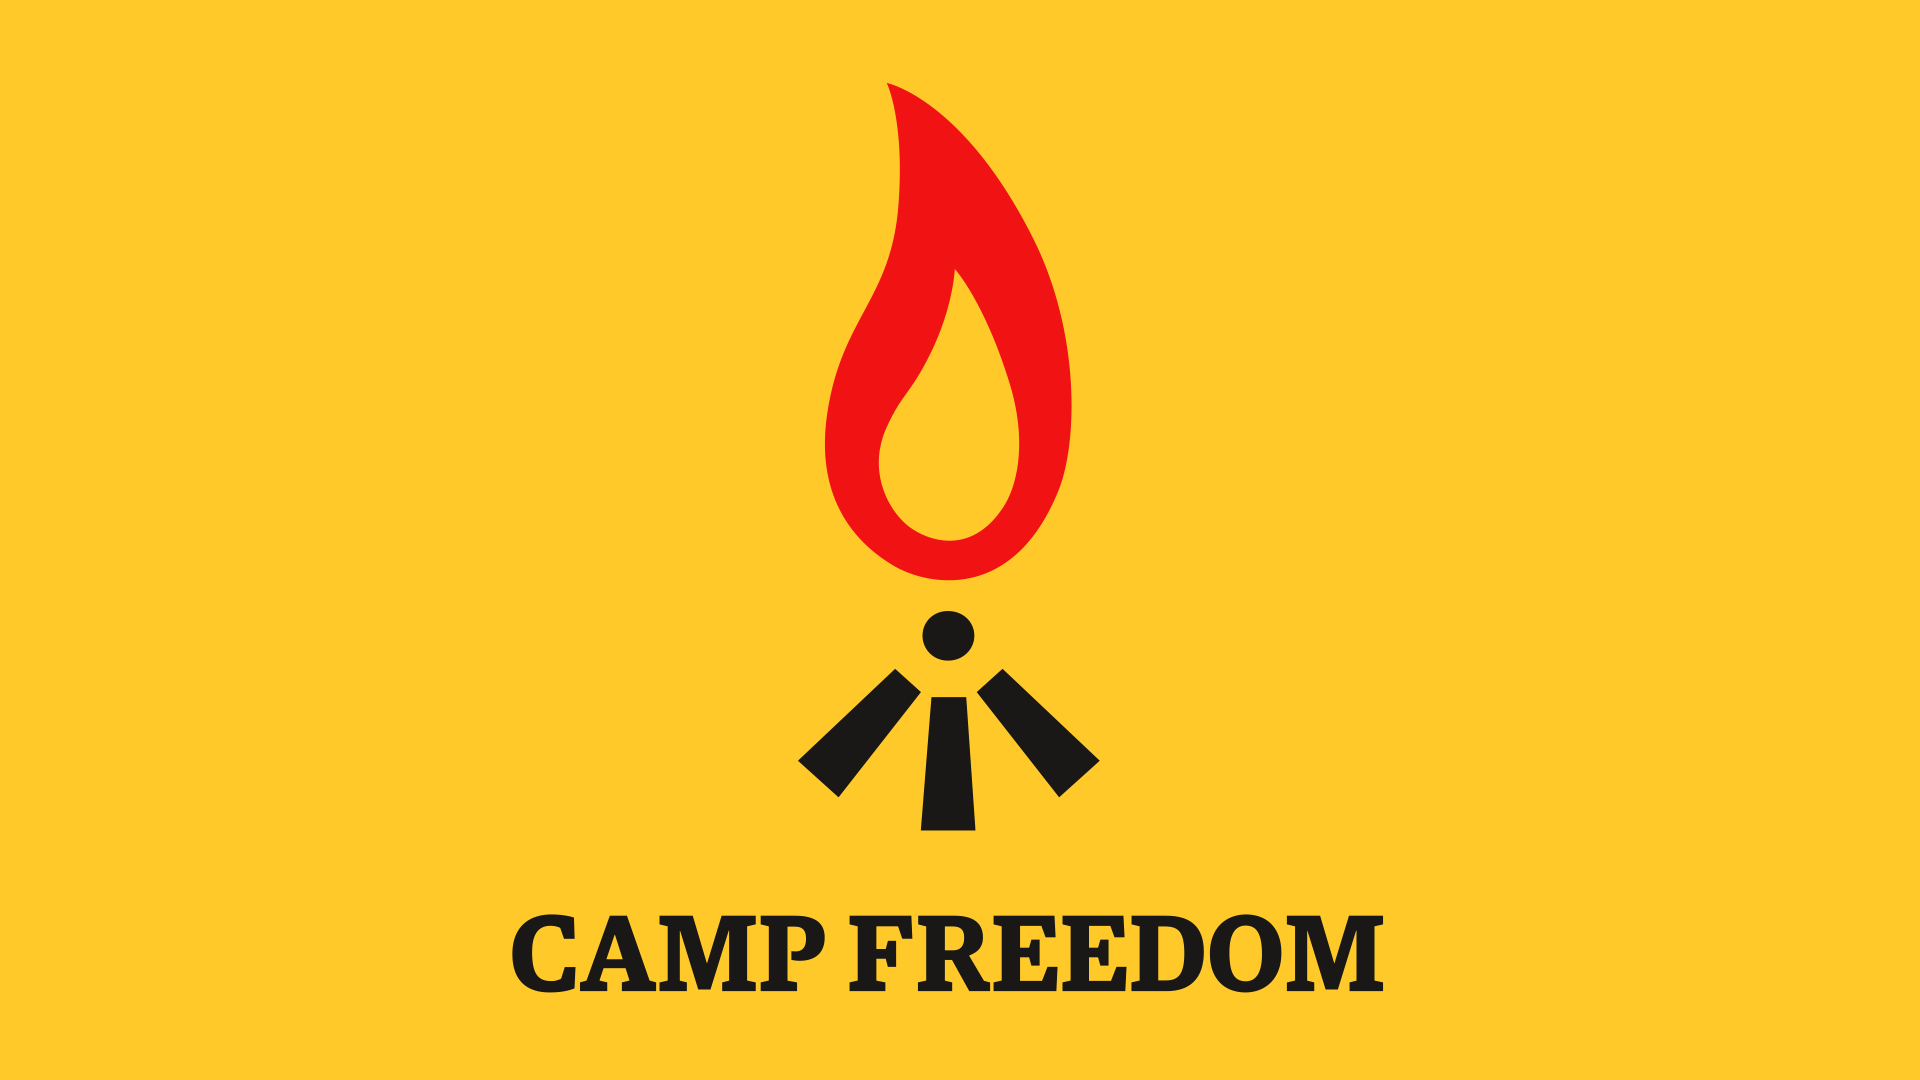 På okergul bakgrunn danner tre utropstegn et bål med en flamme over. Under står teksten: CAMP FREEDOM